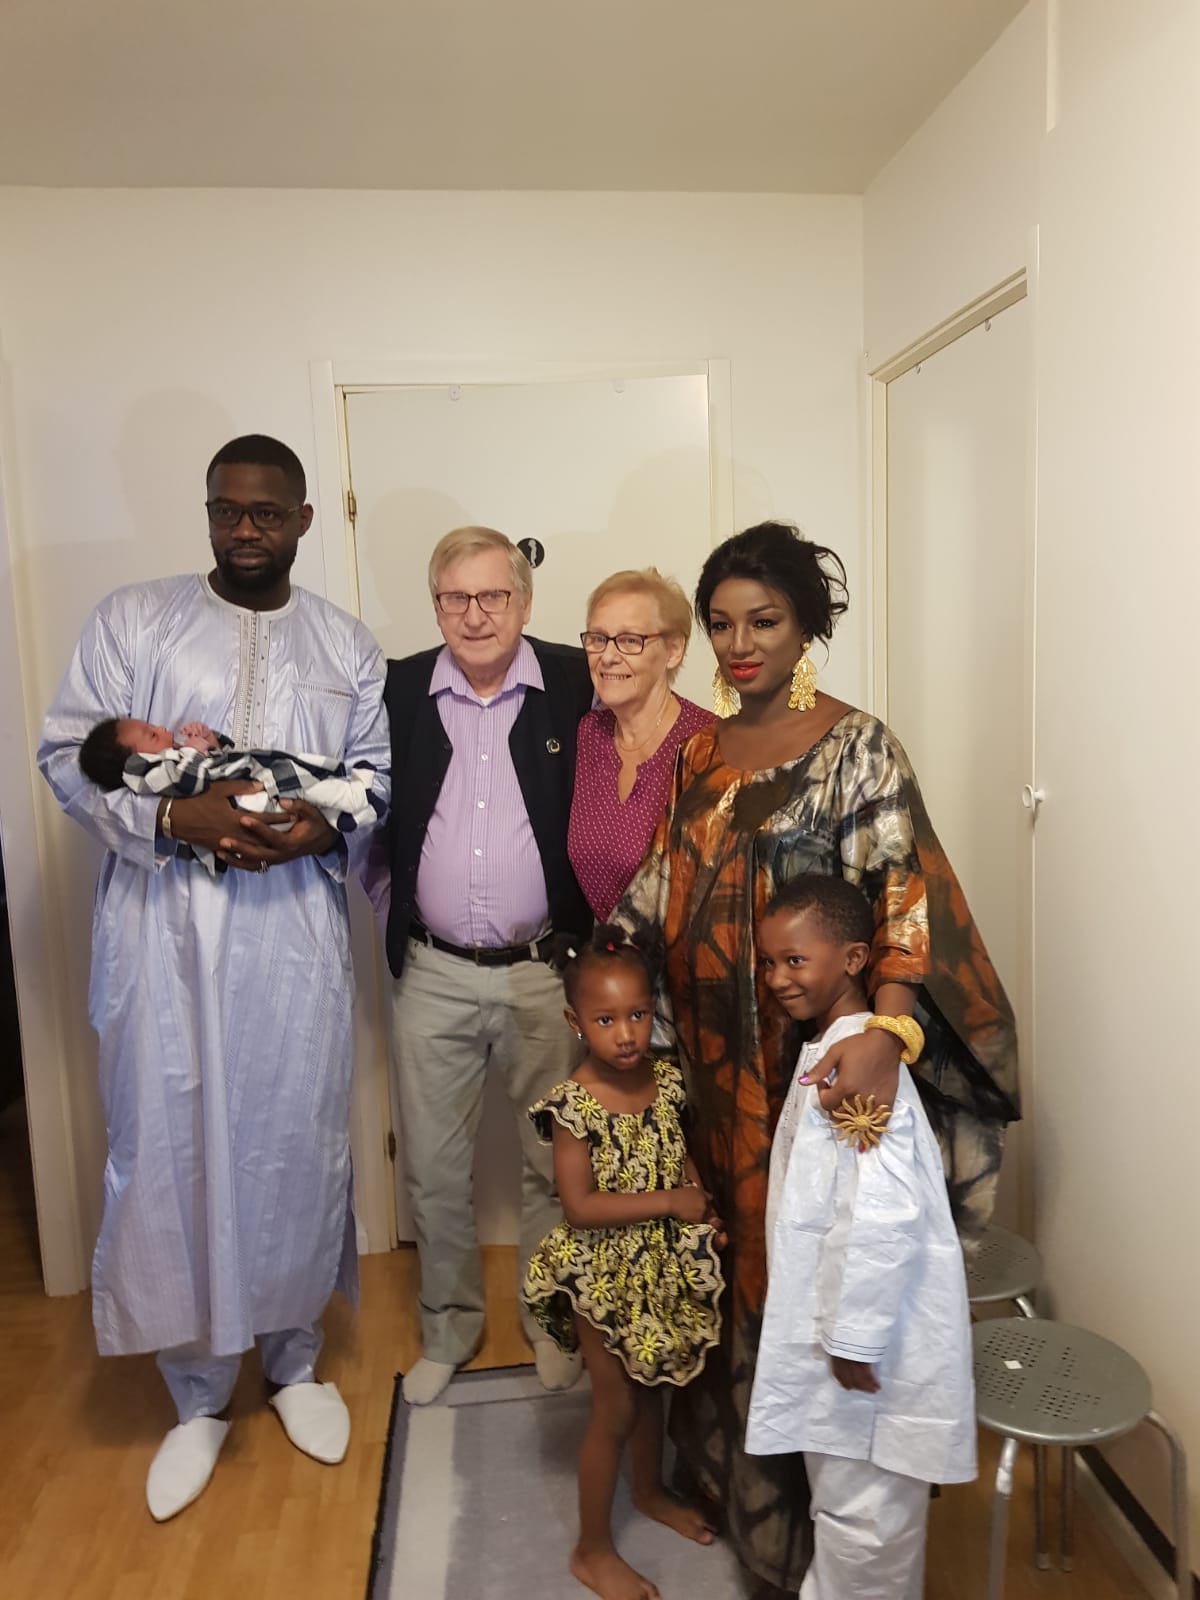 Les images du baptême de la fille aînée de Ousseynou SOKHNA plus connu sous le sobriquet de "OPI",célébré ce dimanche 23 Septembre 2018 à Stockholm.